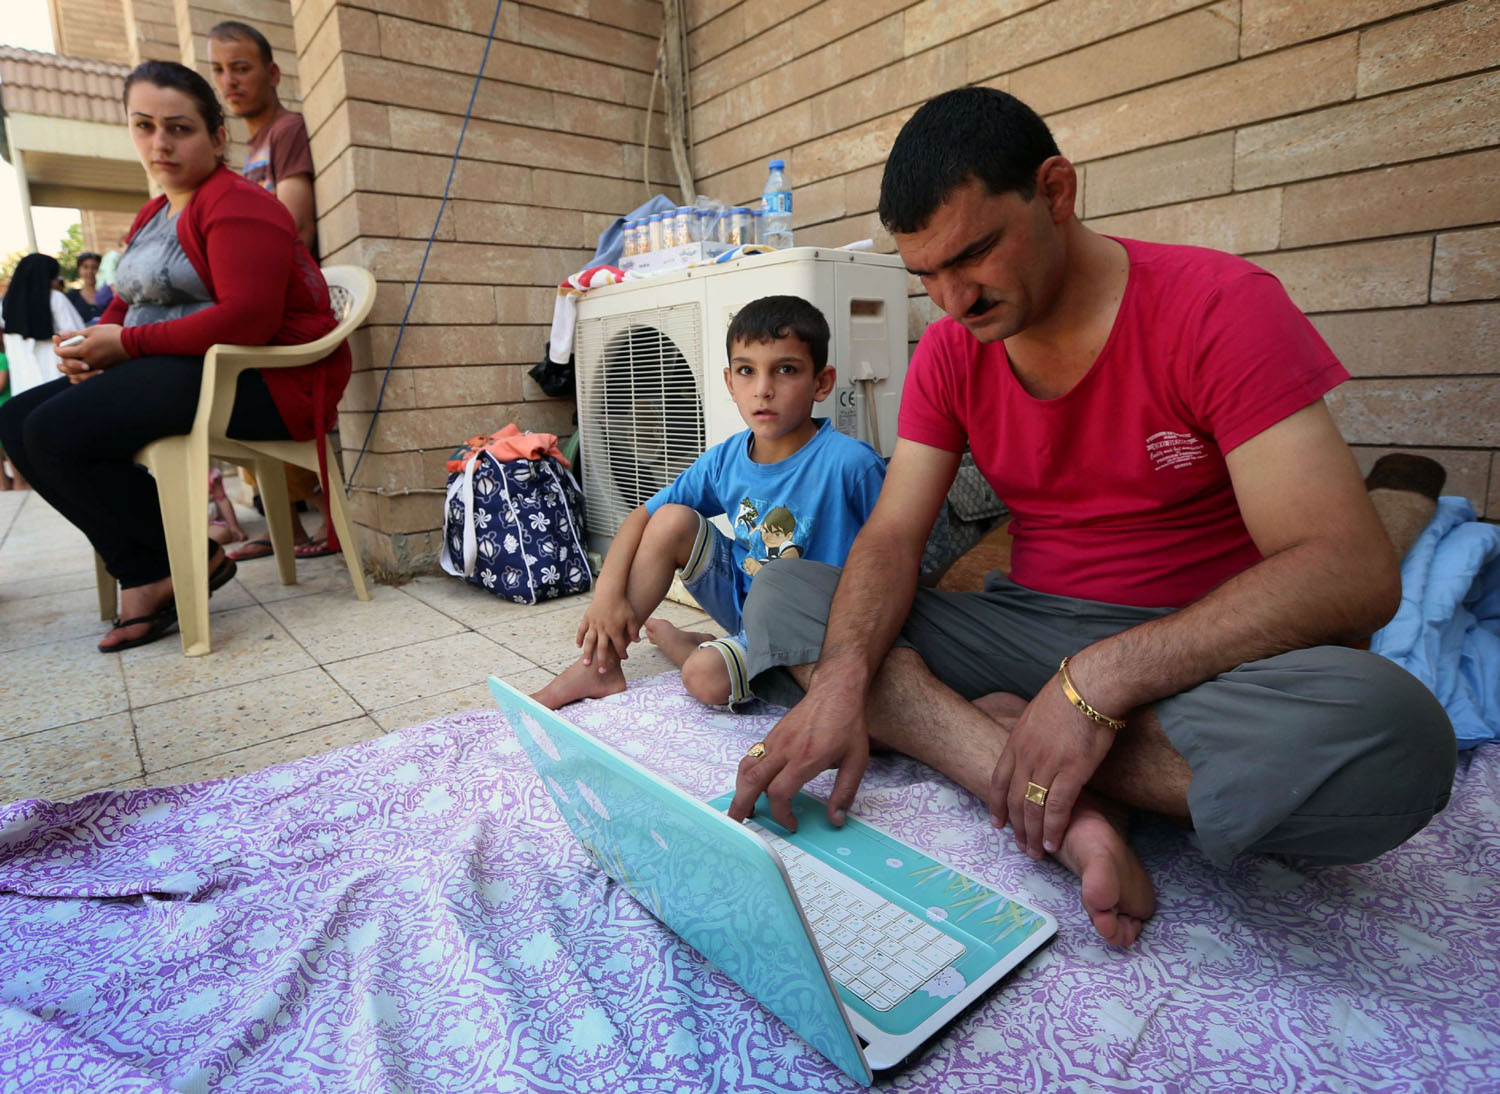 مهجر مسيحي يتصفح الكمبيوتر في مدينة قراقوش شمال العراق